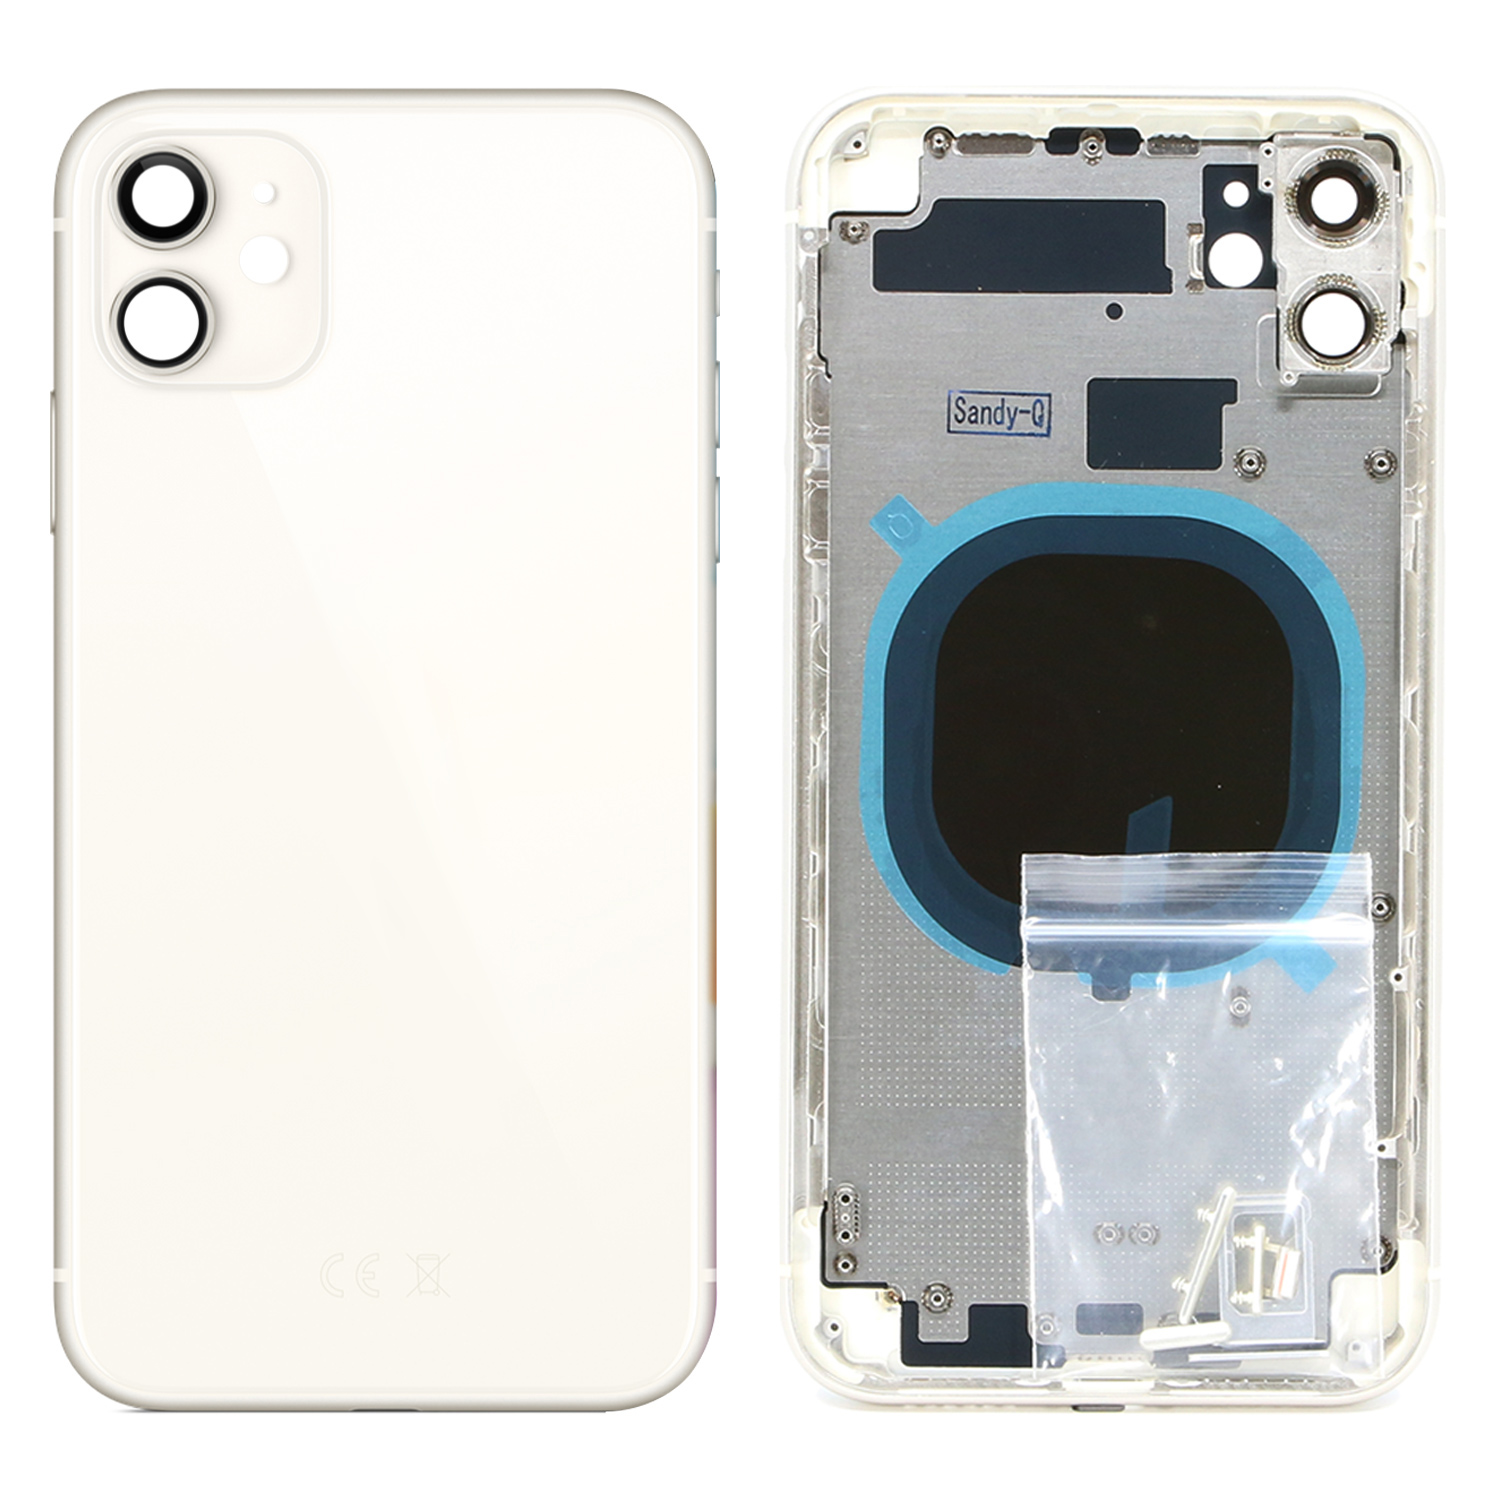 Apple İphone 3 Kasa (Dolu) Beyaz